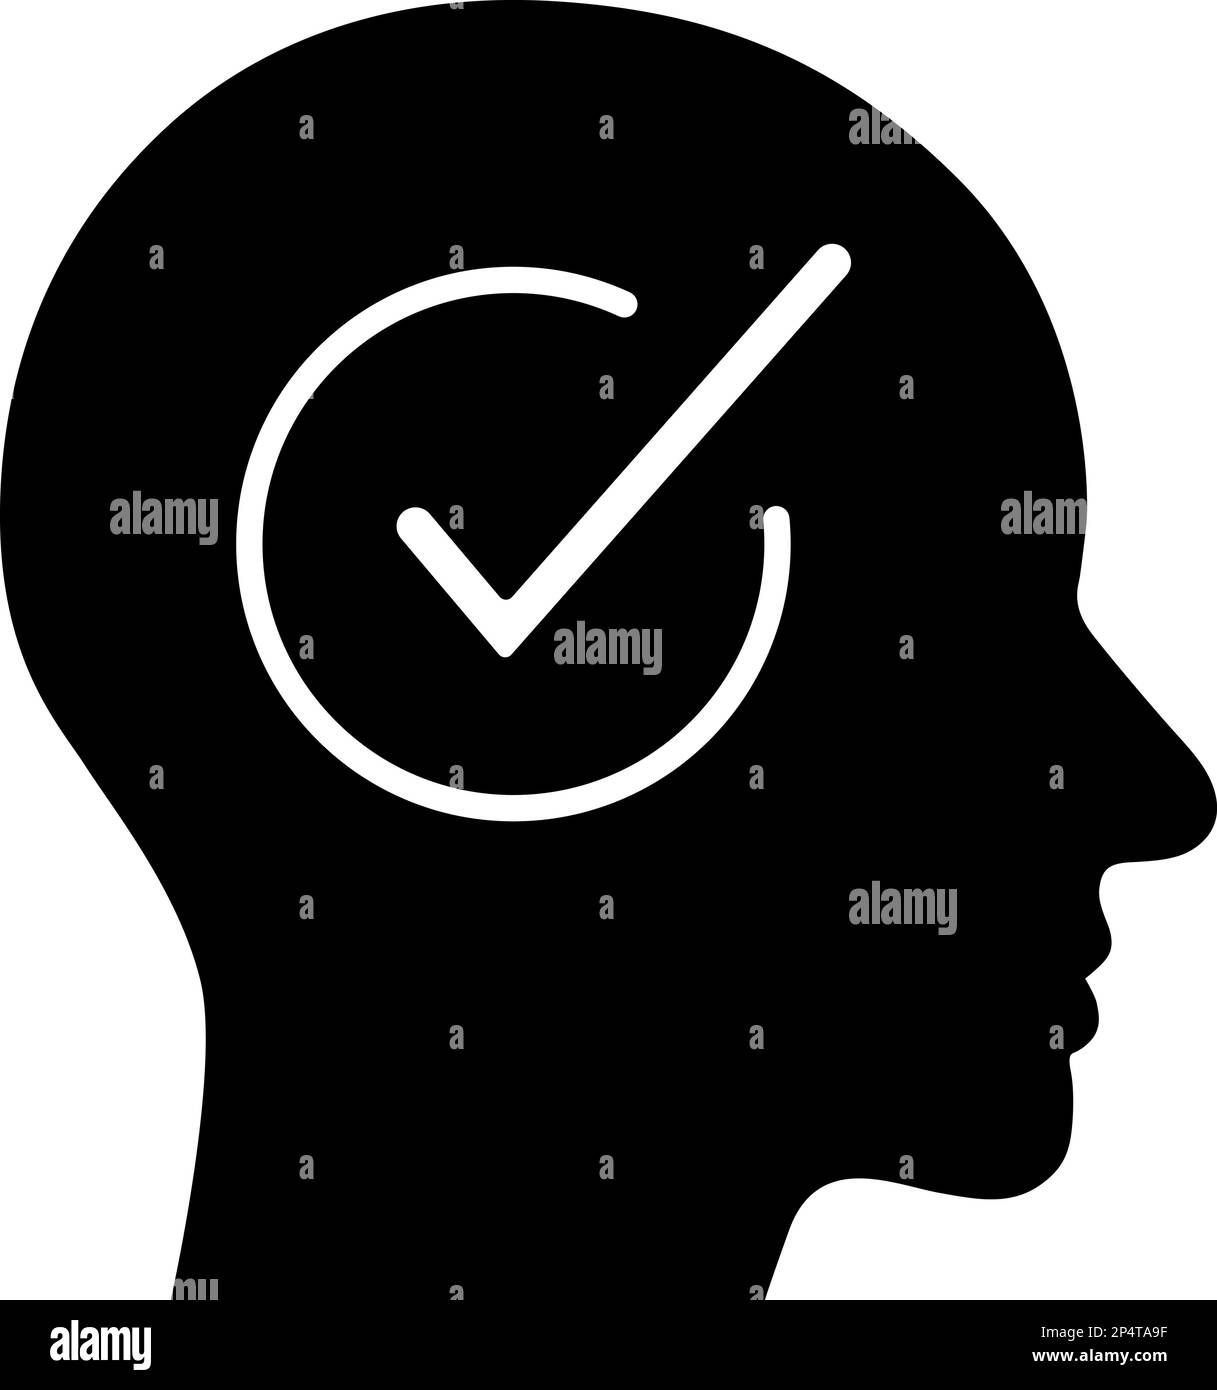 Icona piatta del segno di spunta nella testa umana come concetto di scelta o soluzione personale Illustrazione Vettoriale